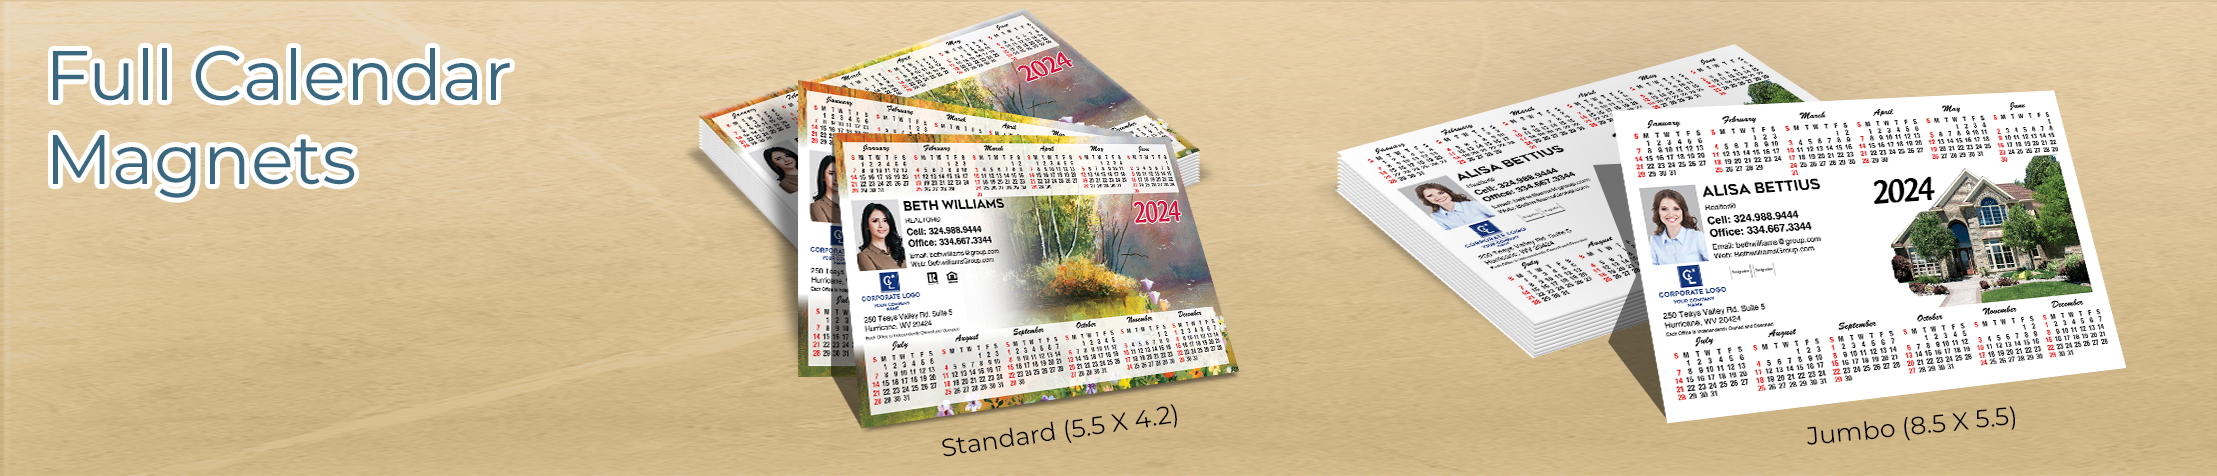 Coldwell Banker Real Estate Full Calendar Magnets - Coldwell Banker 2019 calendars in Standard or Jumbo Size | BestPrintBuy.com